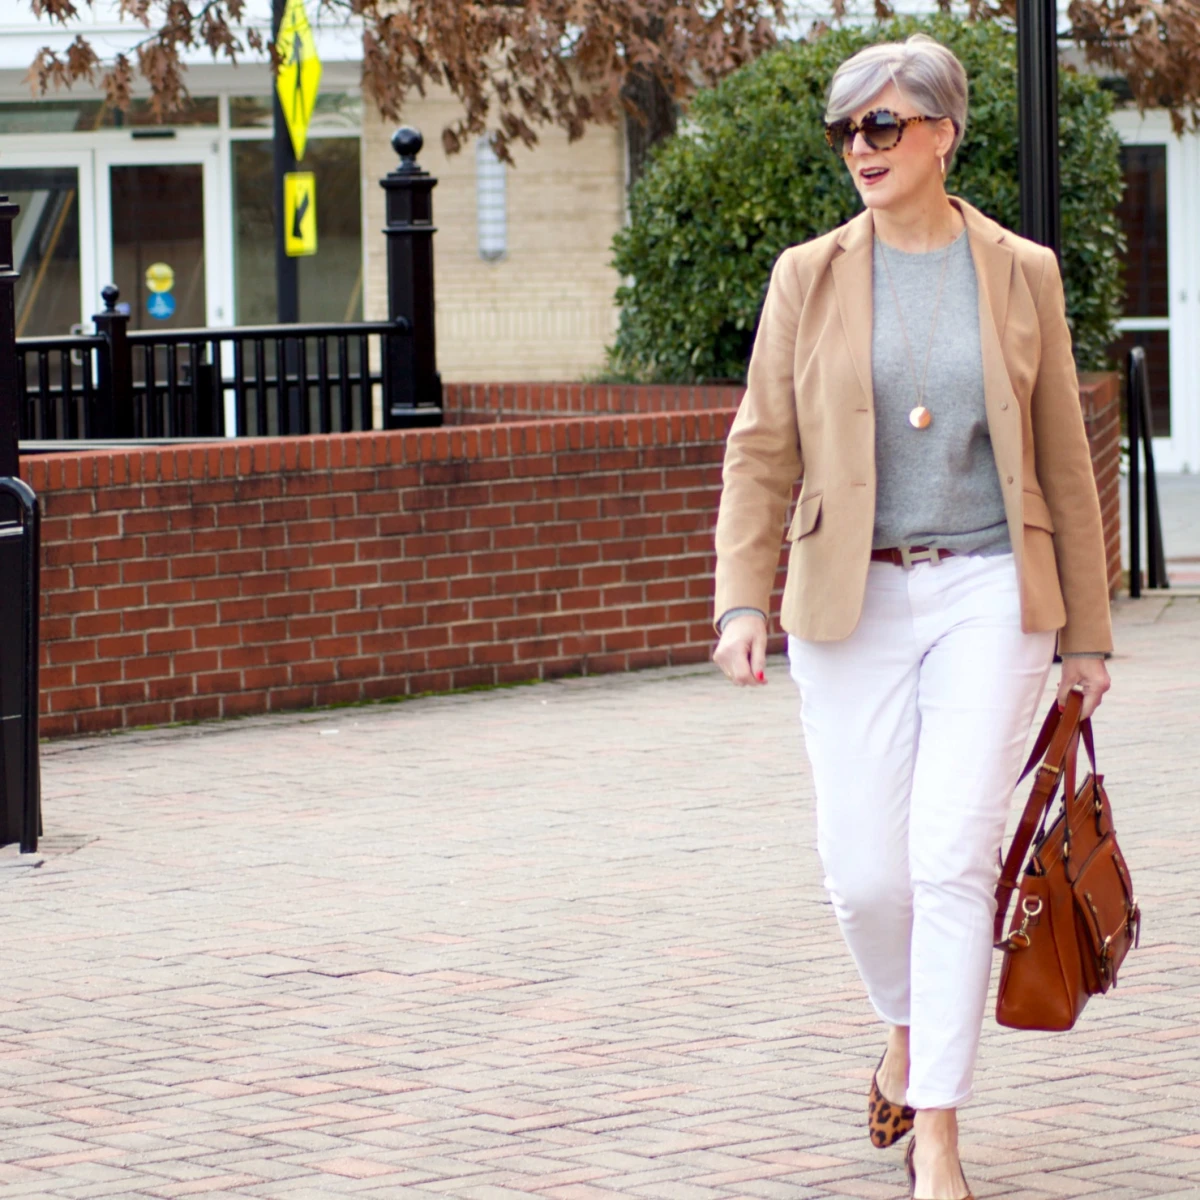 comment porter le jean blanc a 60 ans tenue chic et elegante bottines